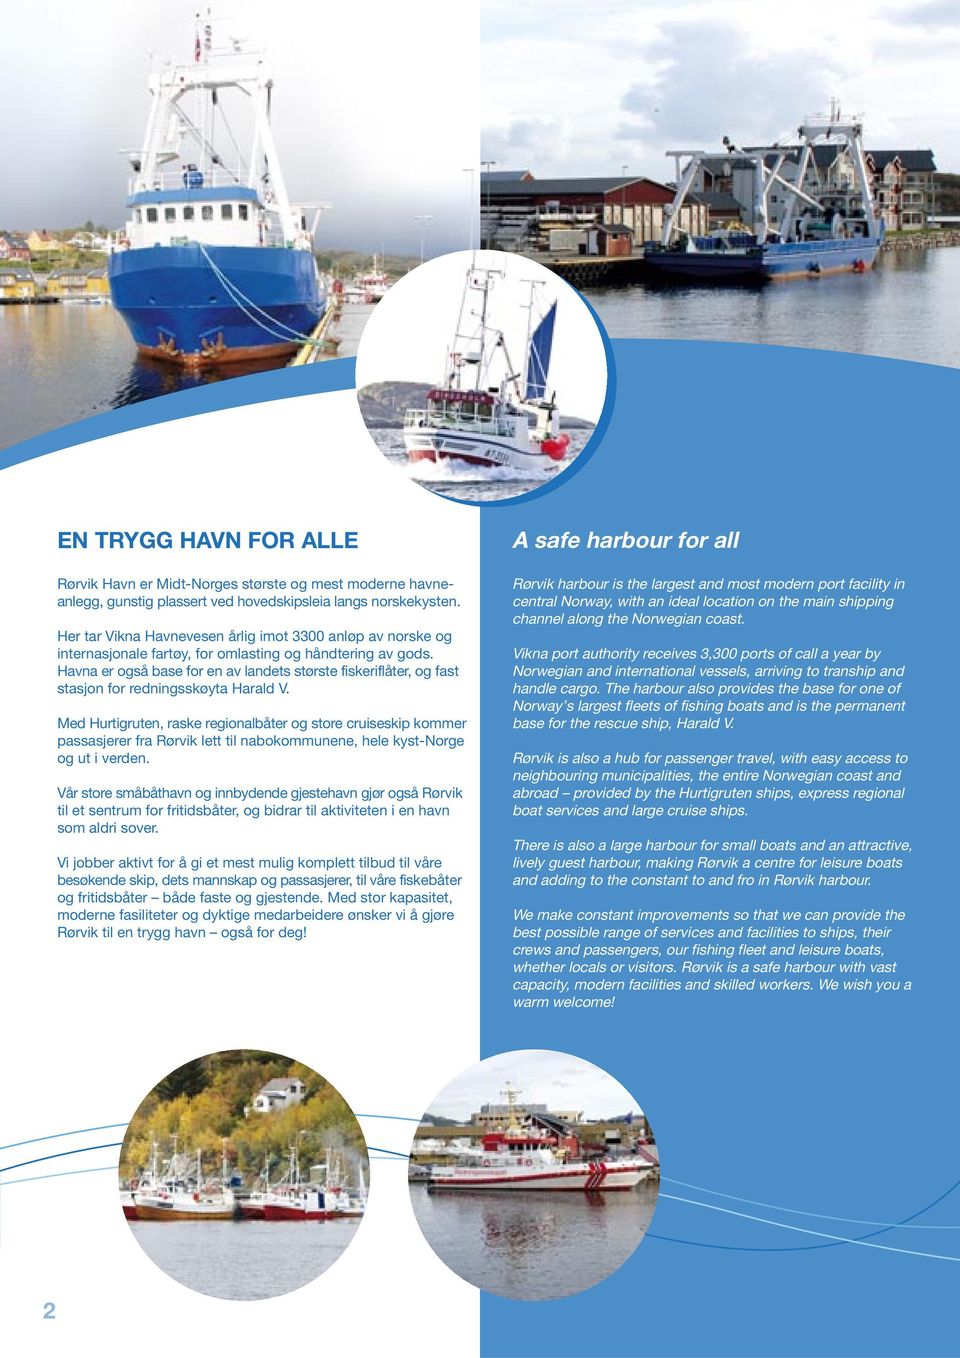 Havna er også base for en av landets største fiskeriflåter, og fast stasjon for redningsskøyta Harald V.